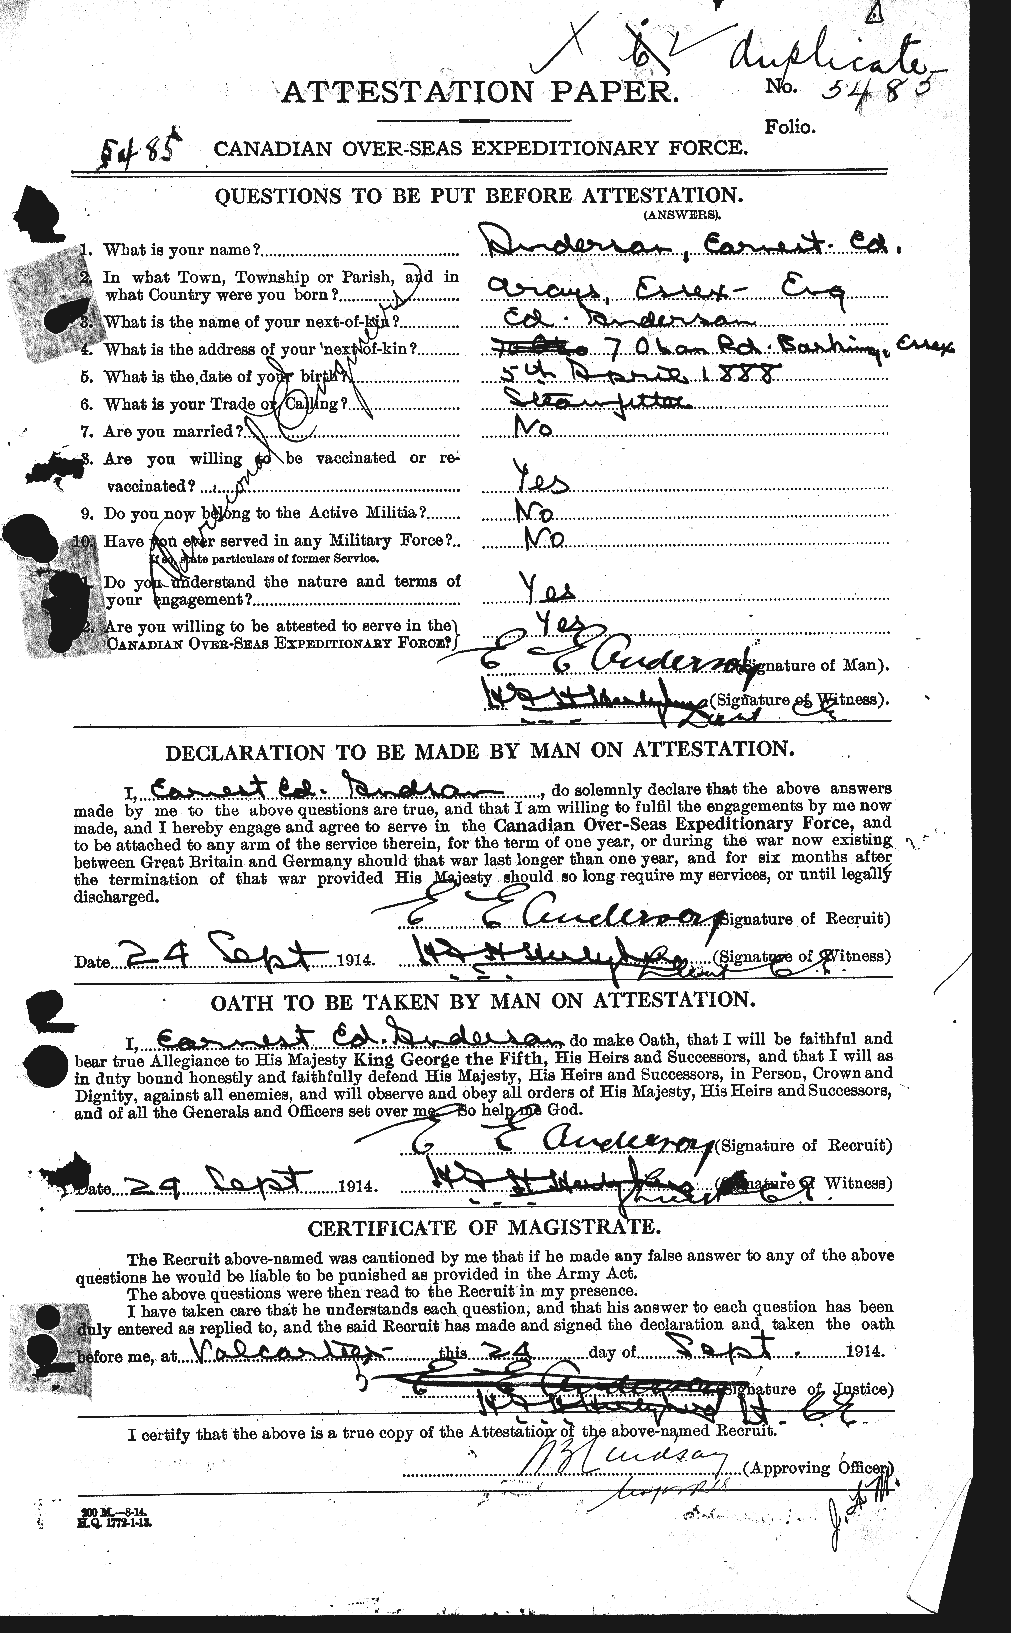 Dossiers du Personnel de la Première Guerre mondiale - CEC 209887a